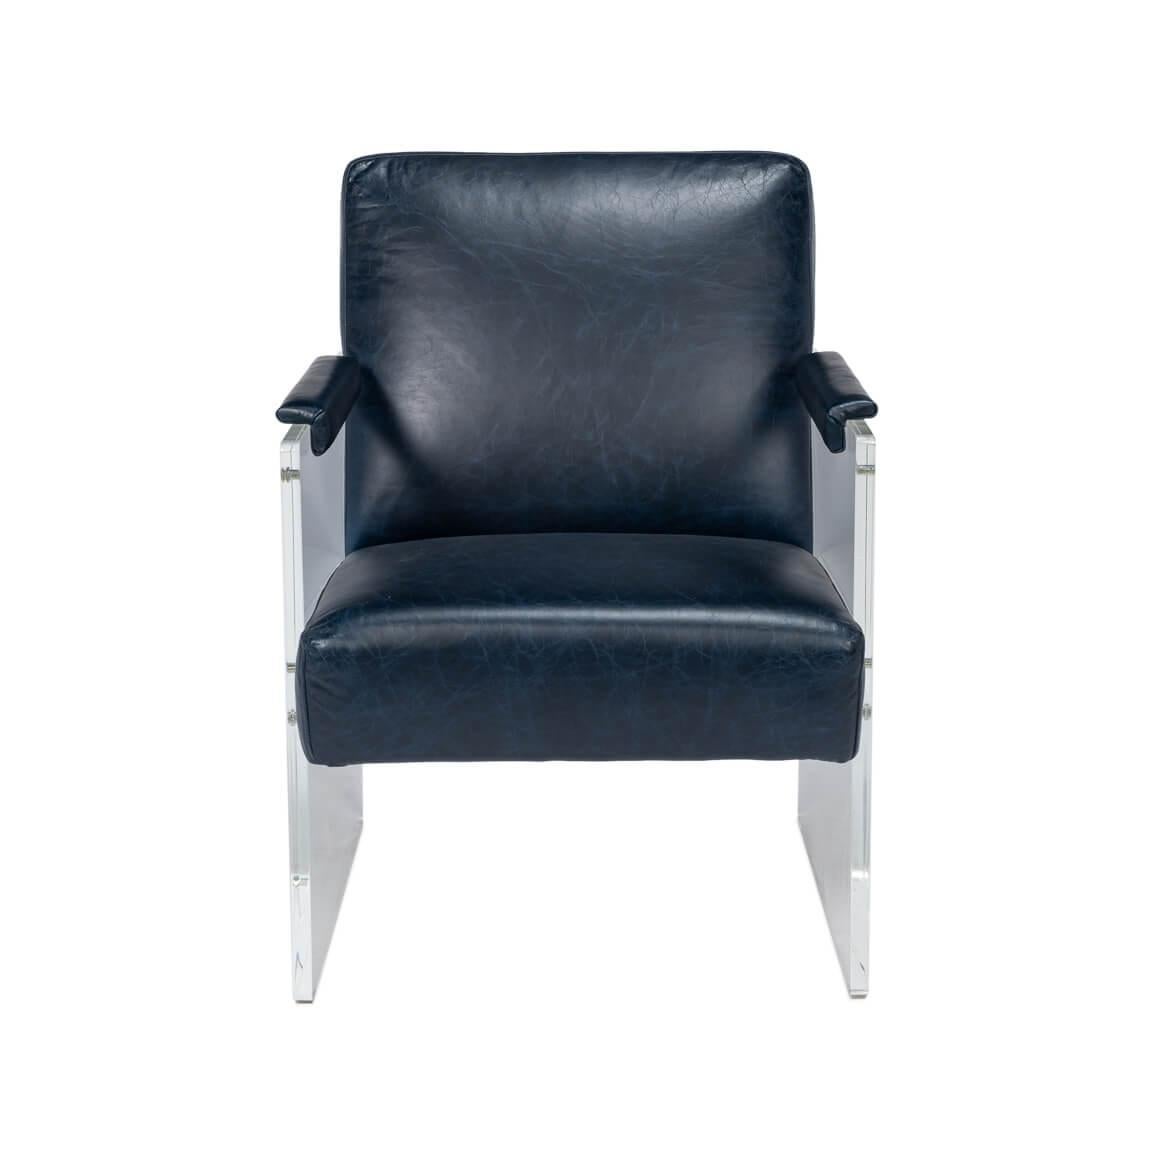 Dieser Stuhl ist eine kühne Mischung aus avantgardistischem Stil und klassischem Komfort. Der Sitz und die Rückenlehne aus elegantem und modernem Chateau Blue-Leder sorgen für ein luxuriöses Sitzerlebnis, während die Seitenteile aus klarem Acryl die